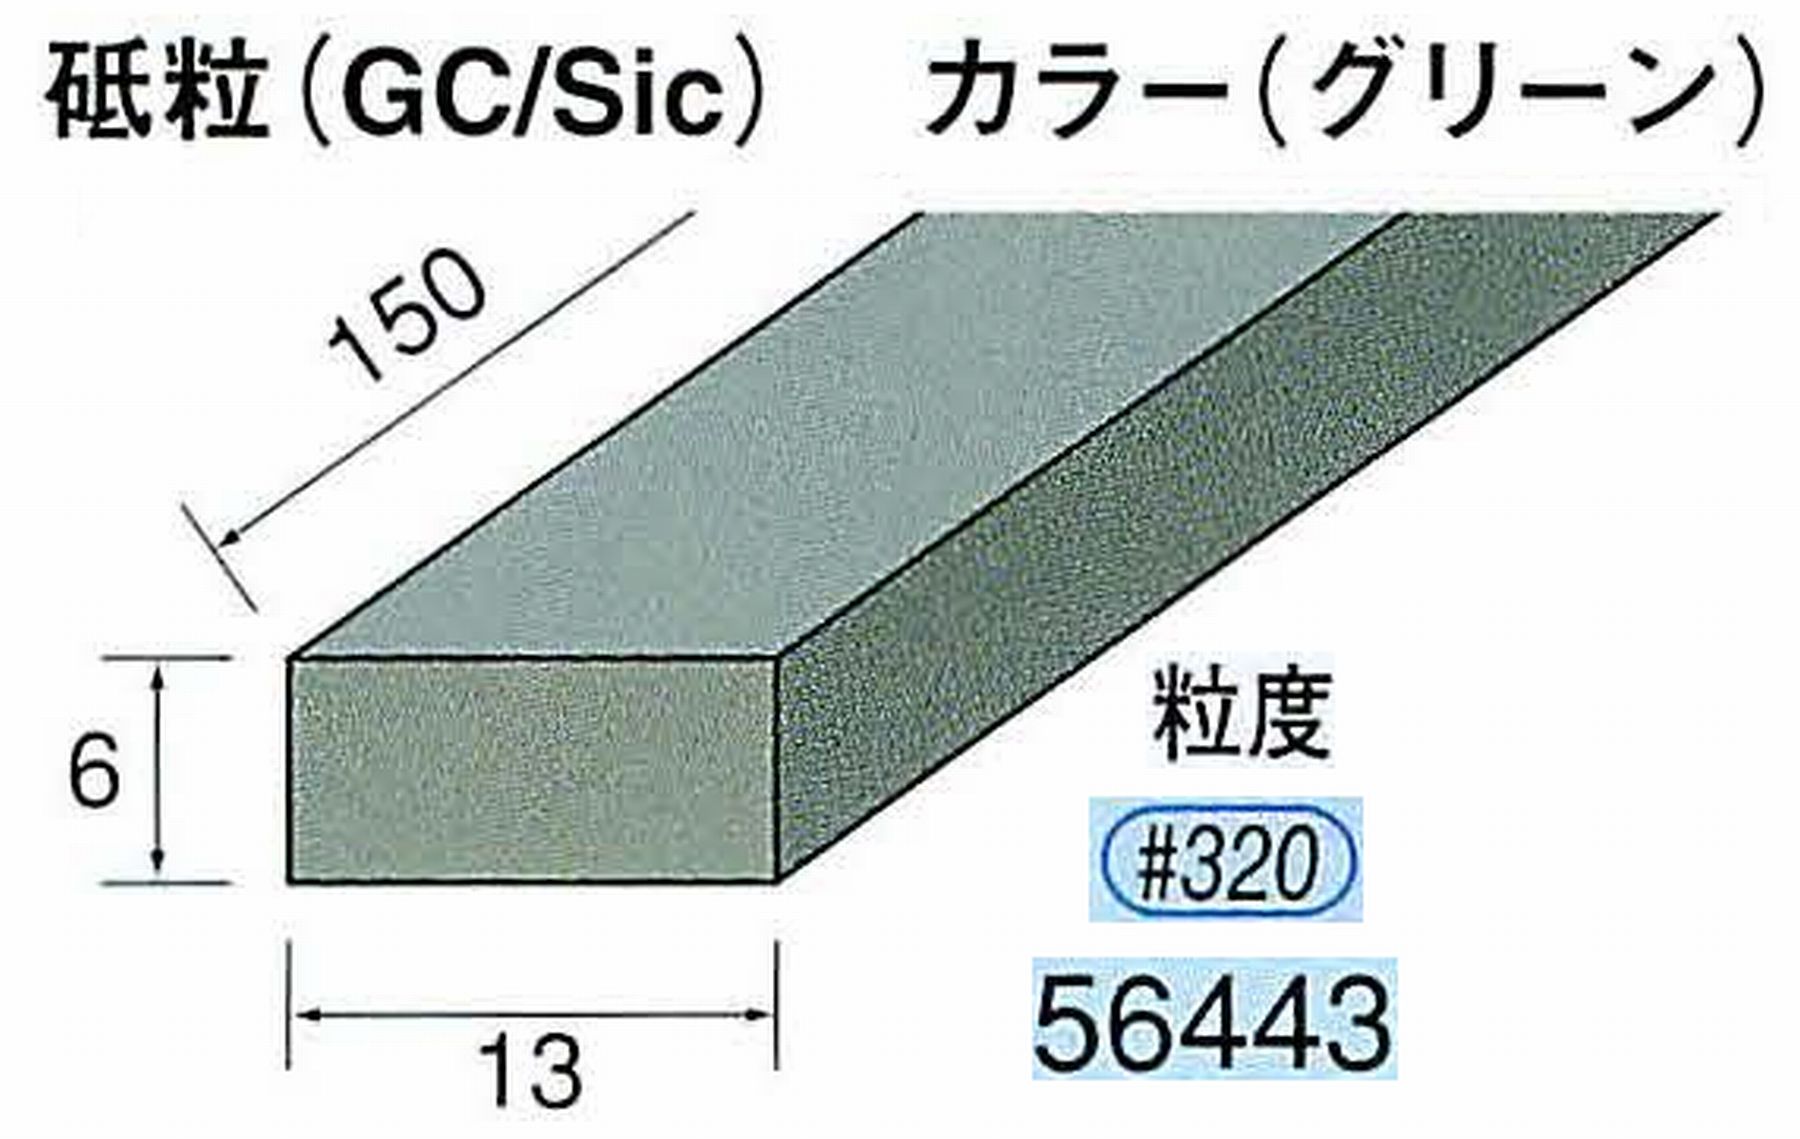 ナカニシ/NAKANISHI スティック砥石 グリーン・フィニッシュシリーズ 砥粒(GC/Sic) 56443